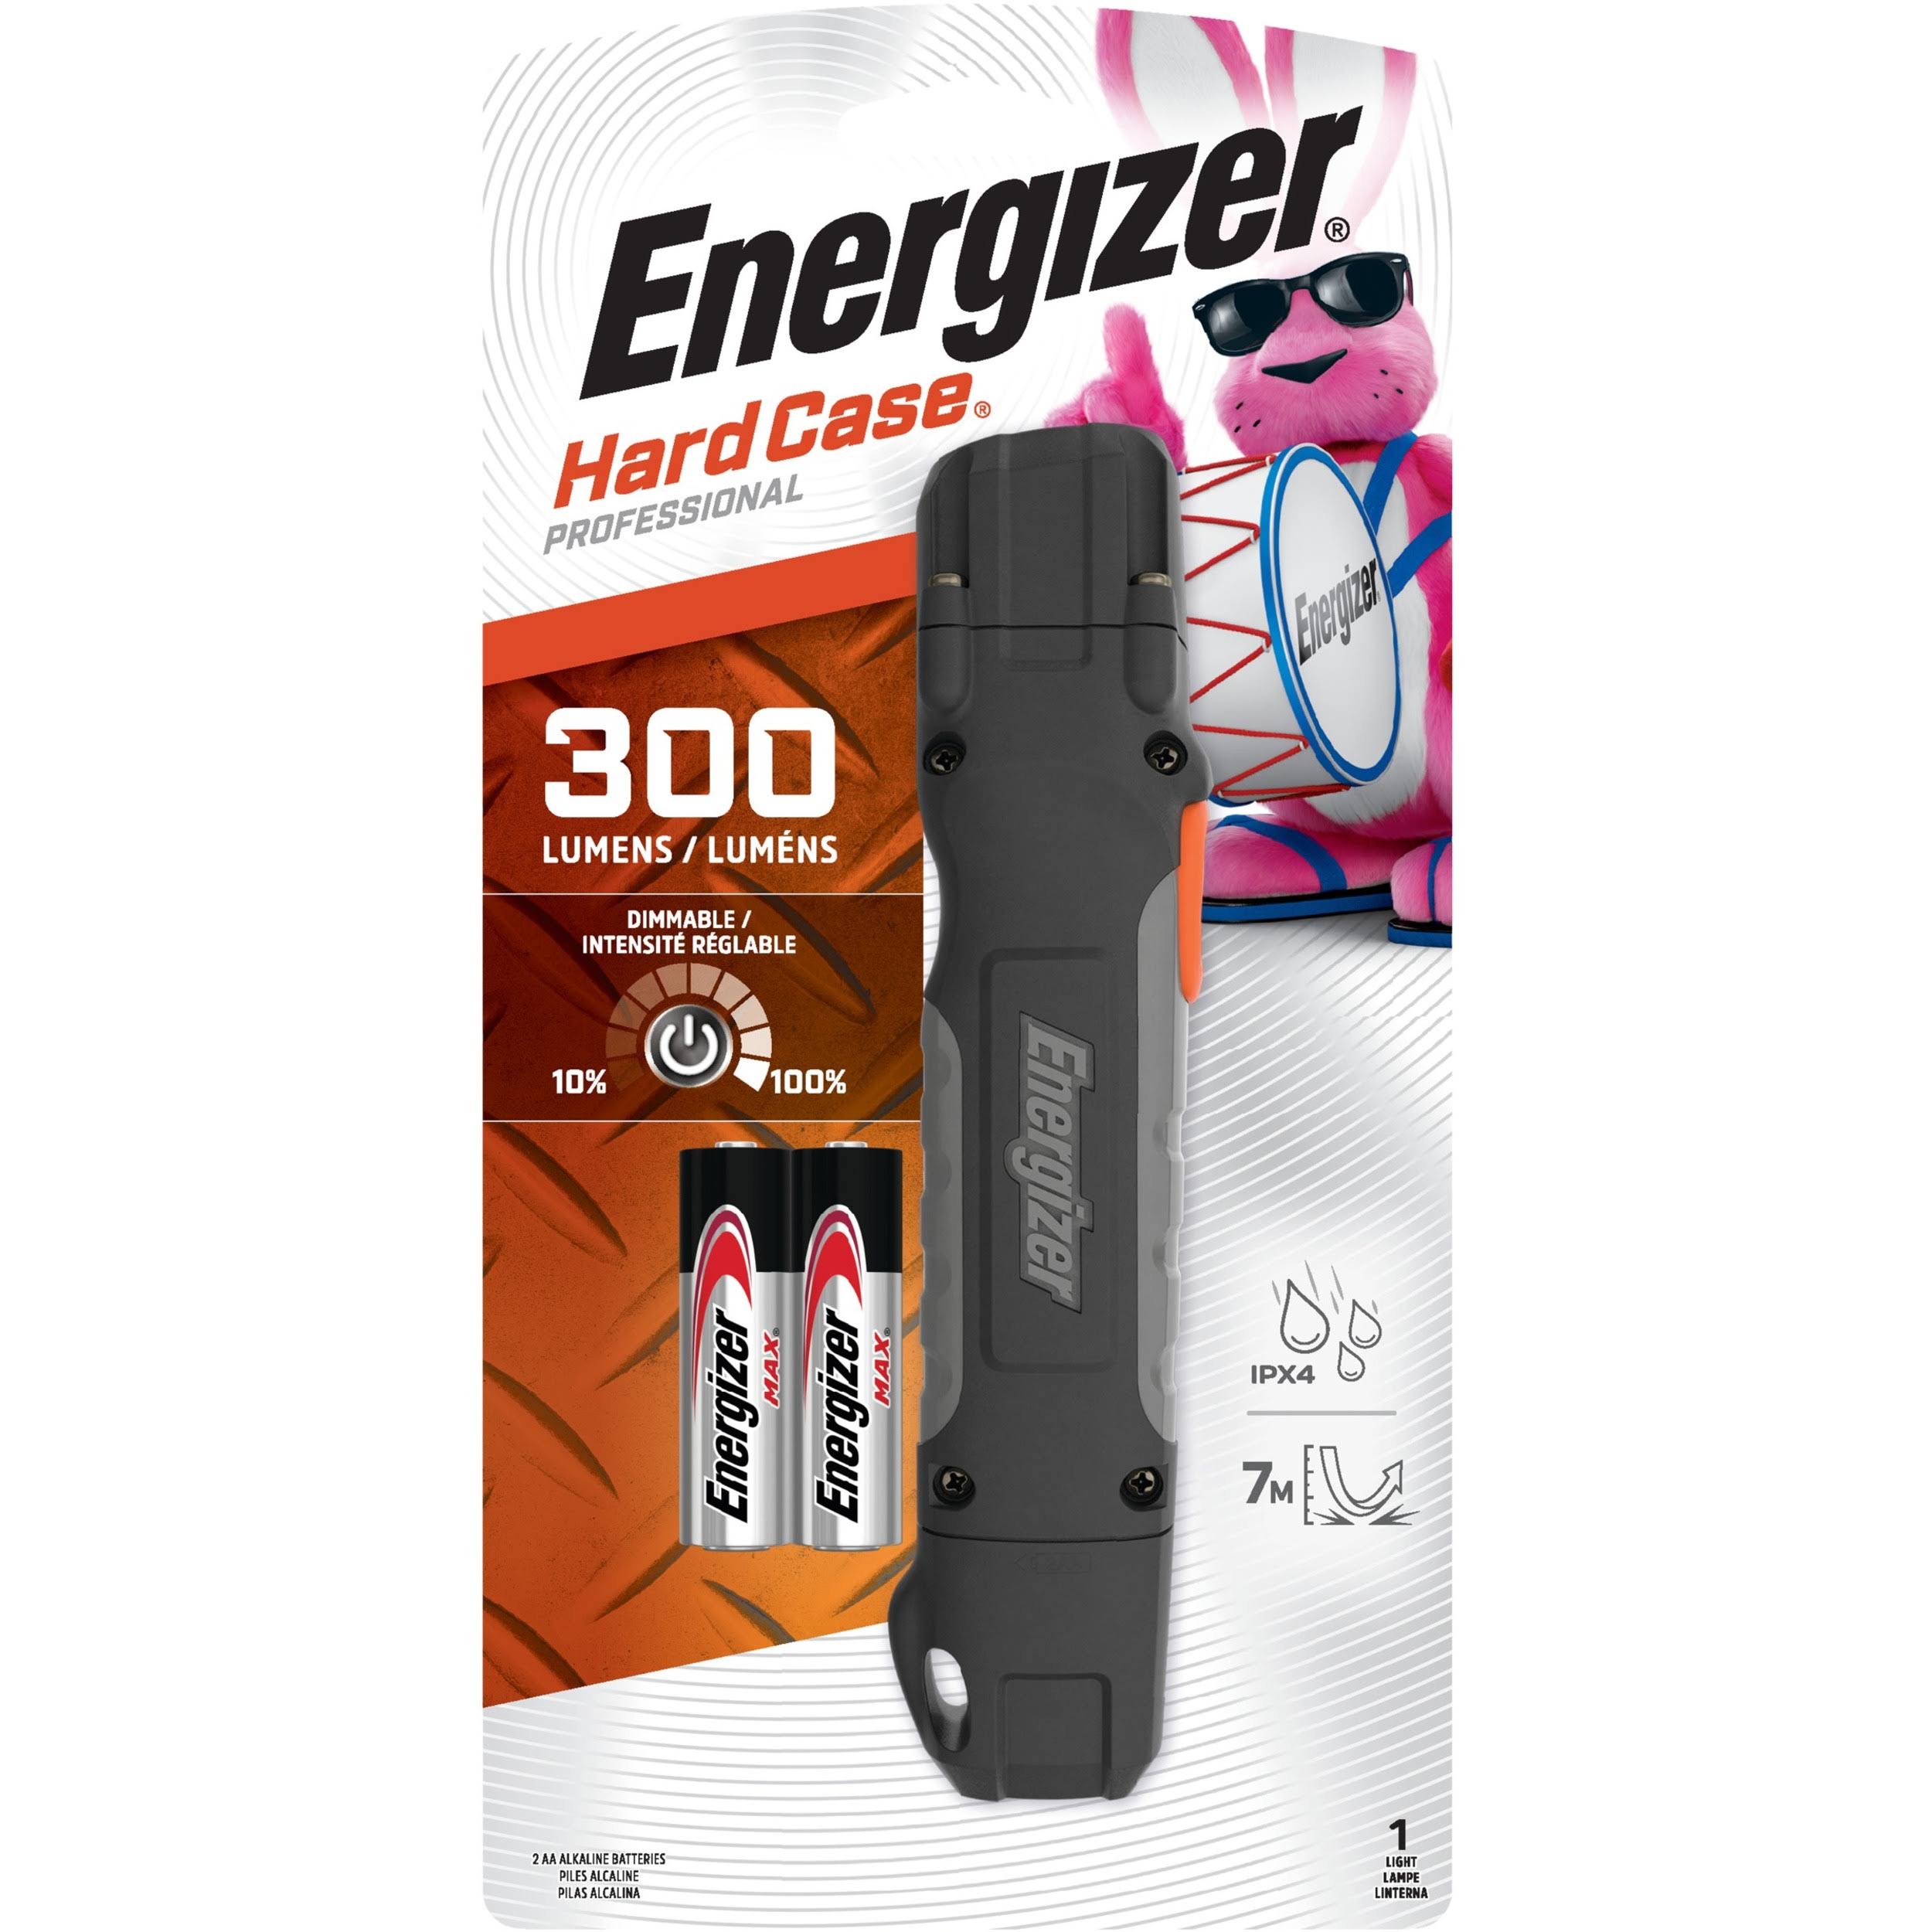 Energizer 3 LED Hardcase Flashlight